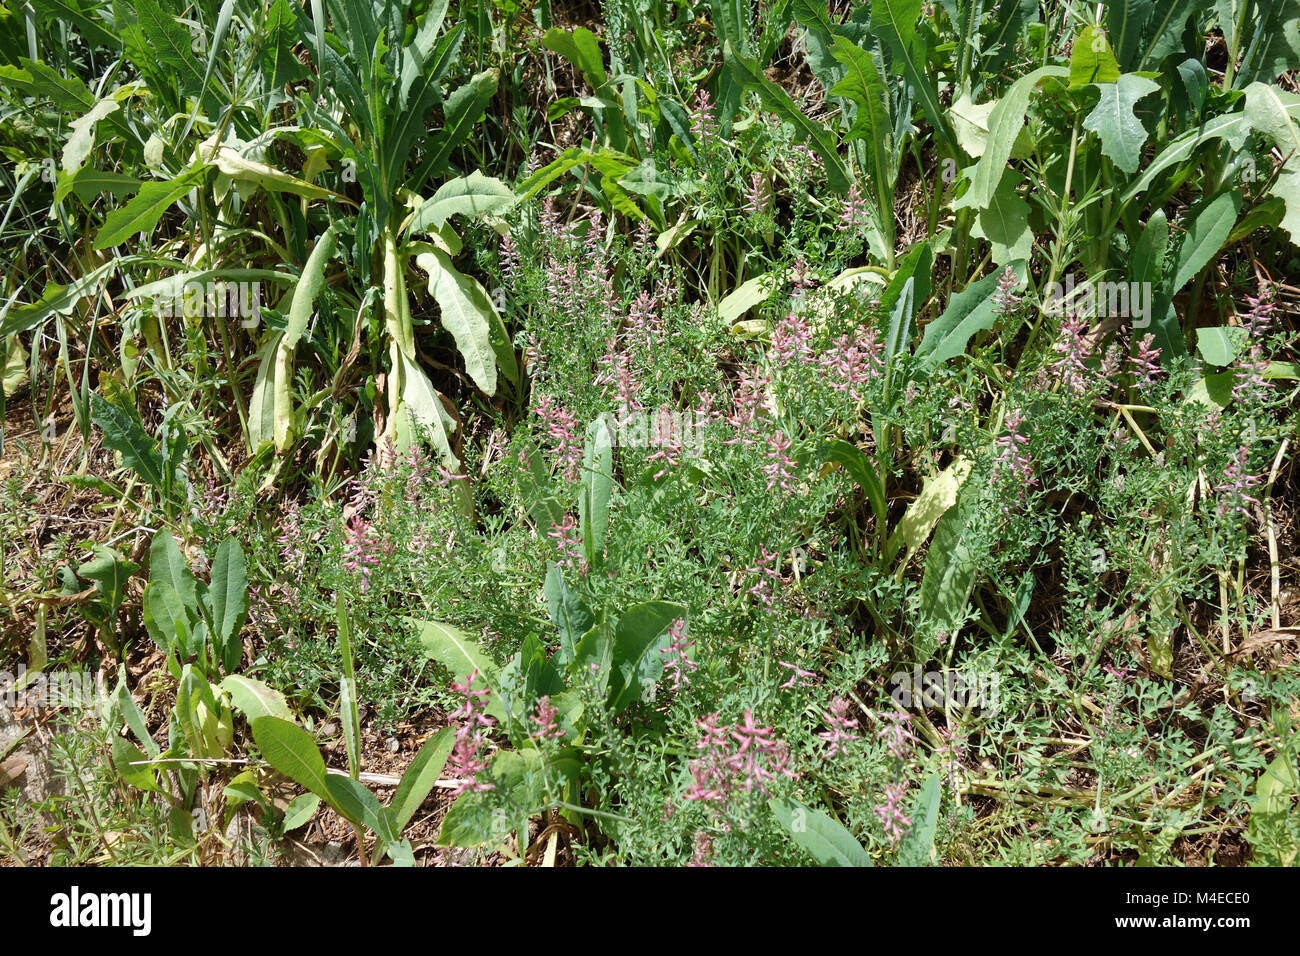 Fumaria officinalis, Fumitory Stock Photo